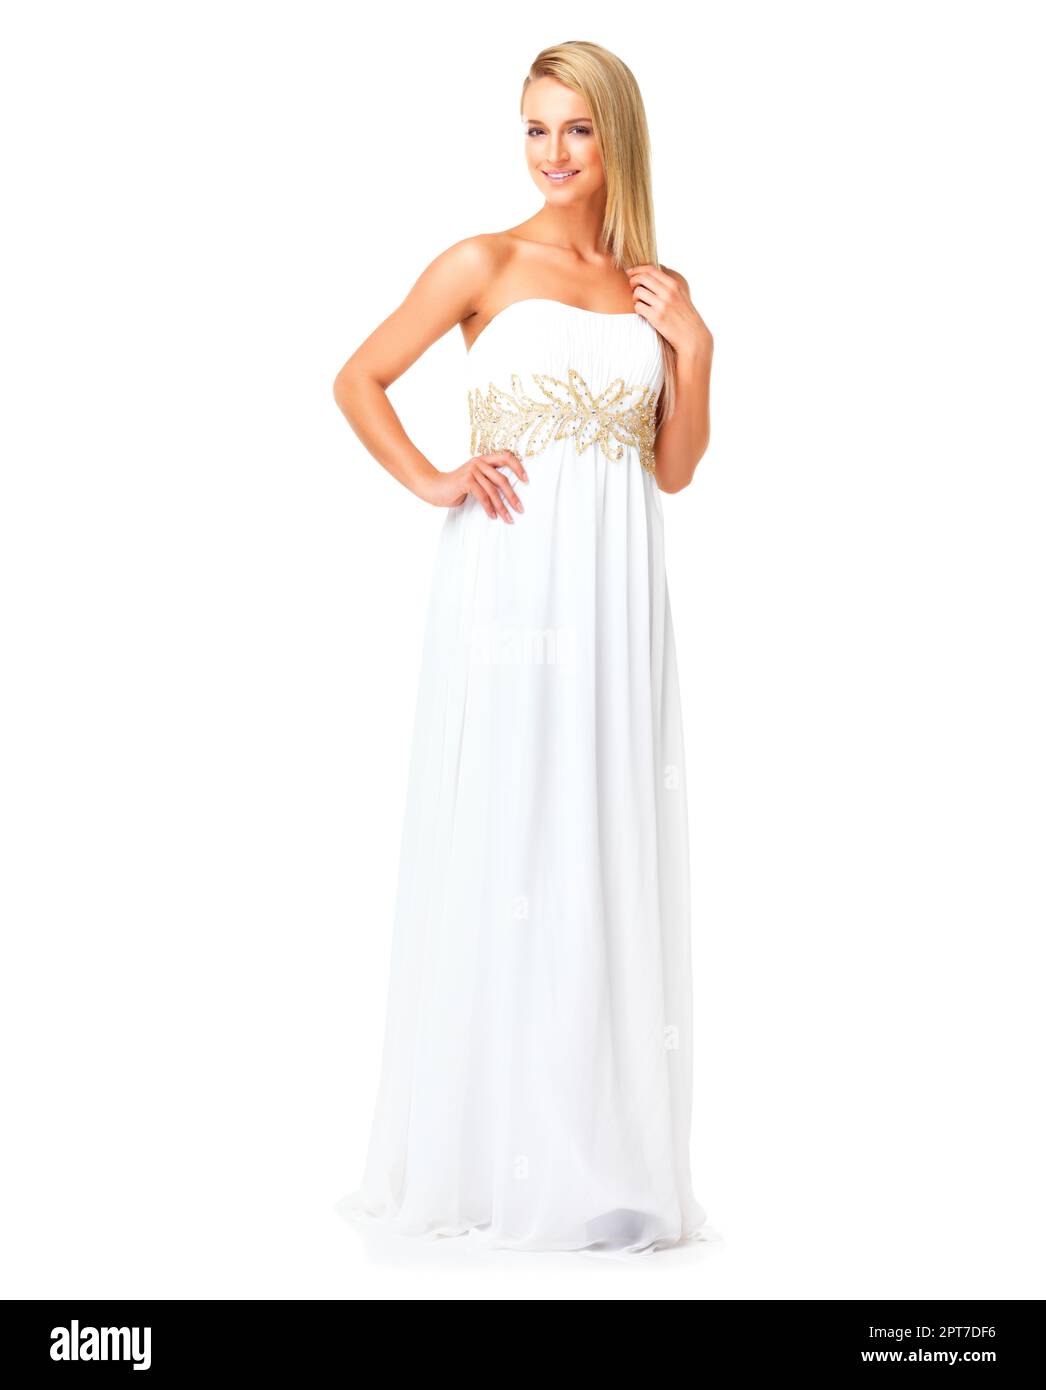 Vestido blanco en mujer elegante, de la moda y de la belleza lista para el baile de graduación, boda o acontecimiento formal contra un fondo del estudio. Novia o novia